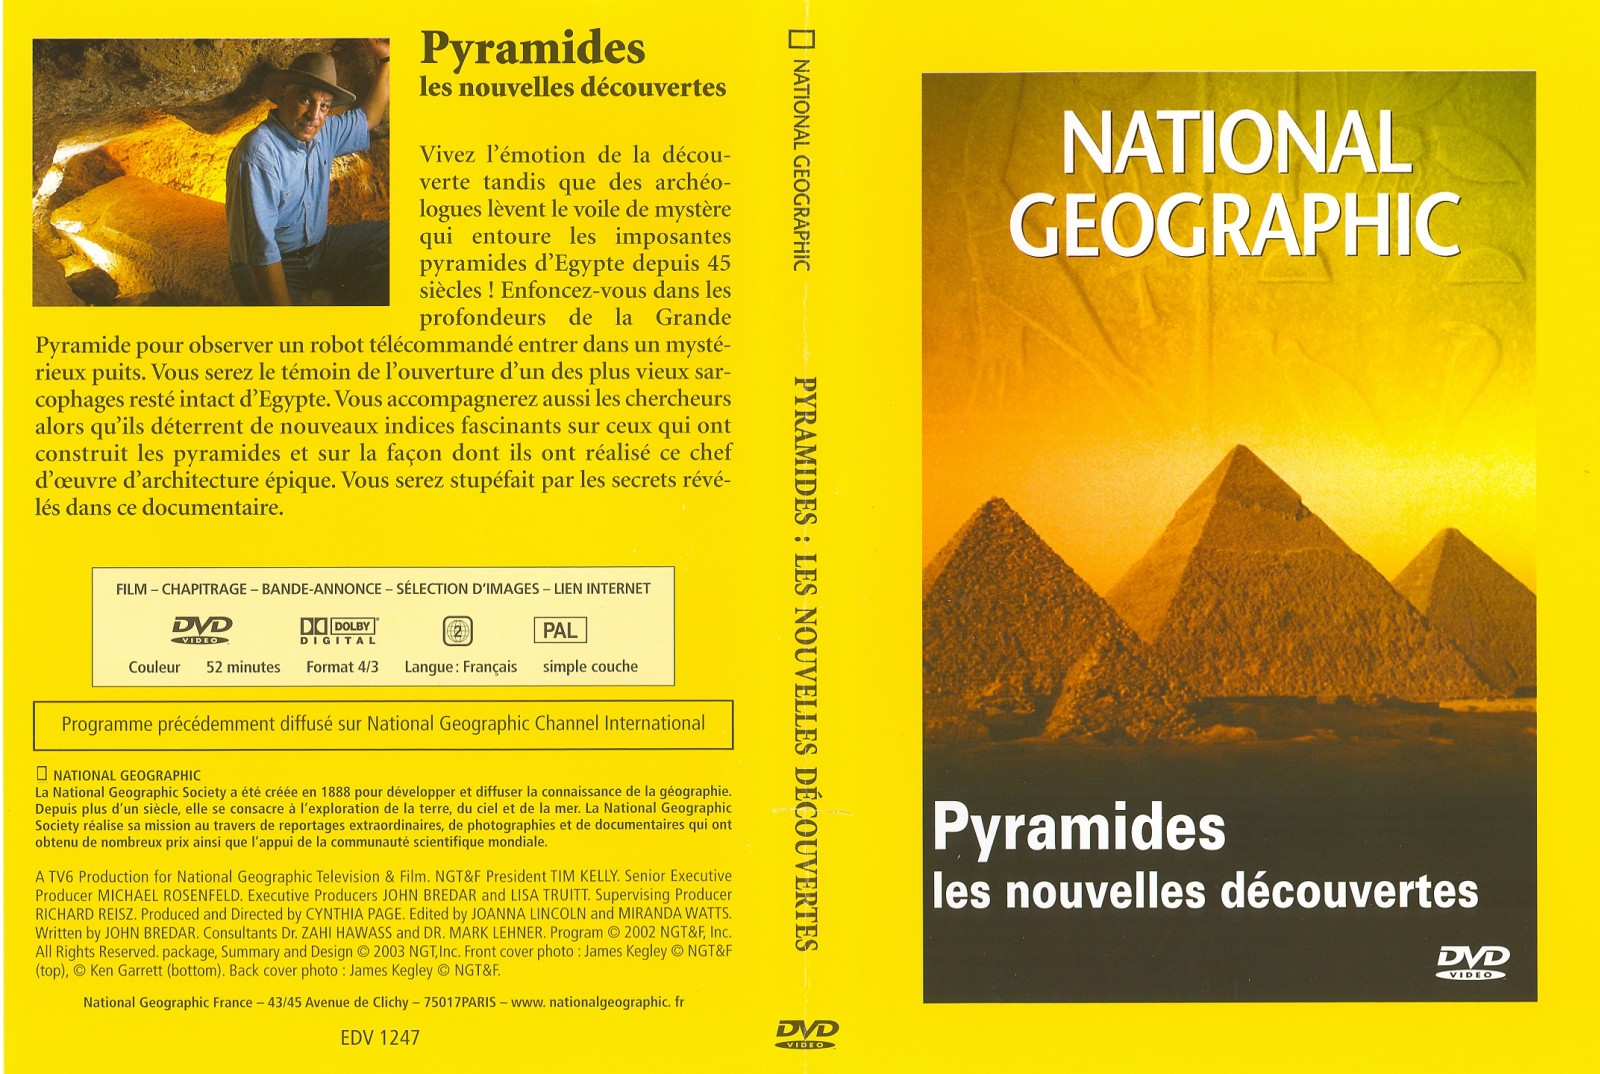 Jaquette DVD National Geographic - Pyramides les nouvelles dcouvertes v2